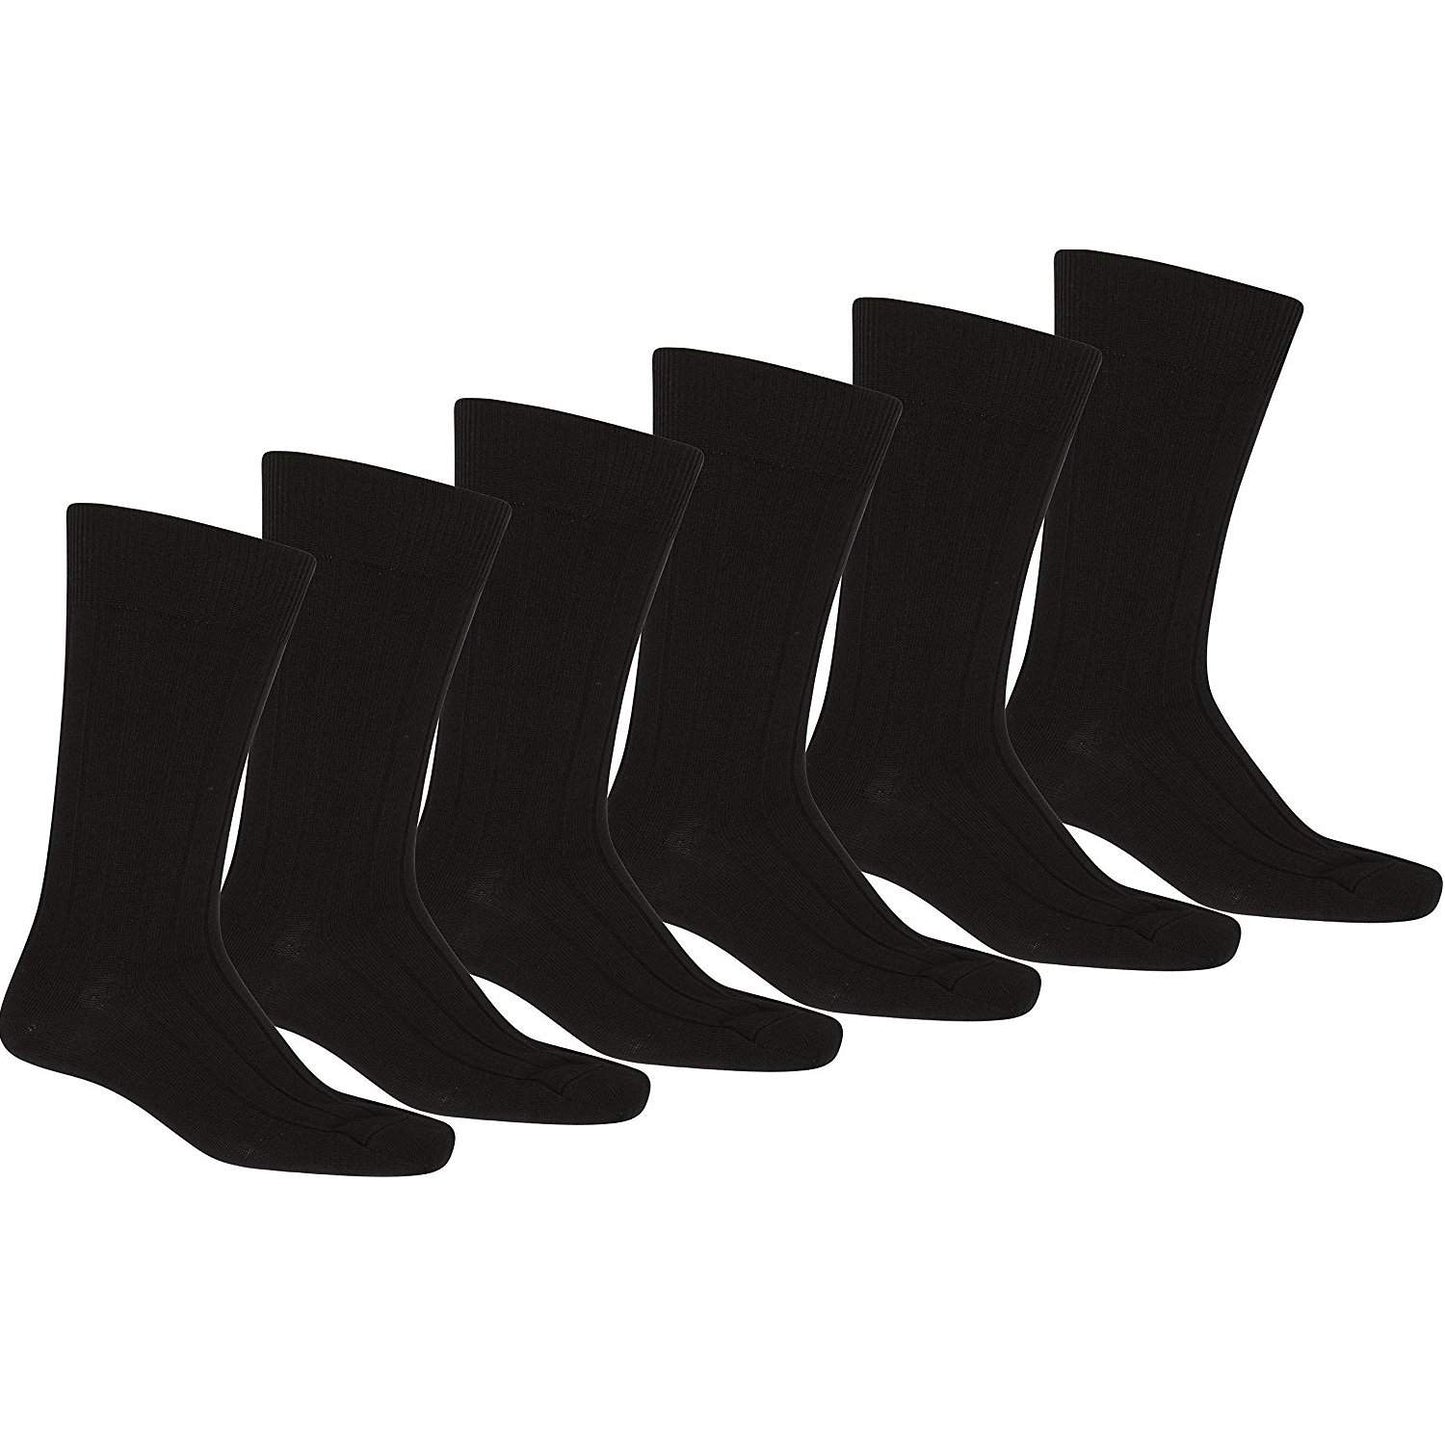 Mechaly Men 12-Pack Solid Plain Dress Socks in Black